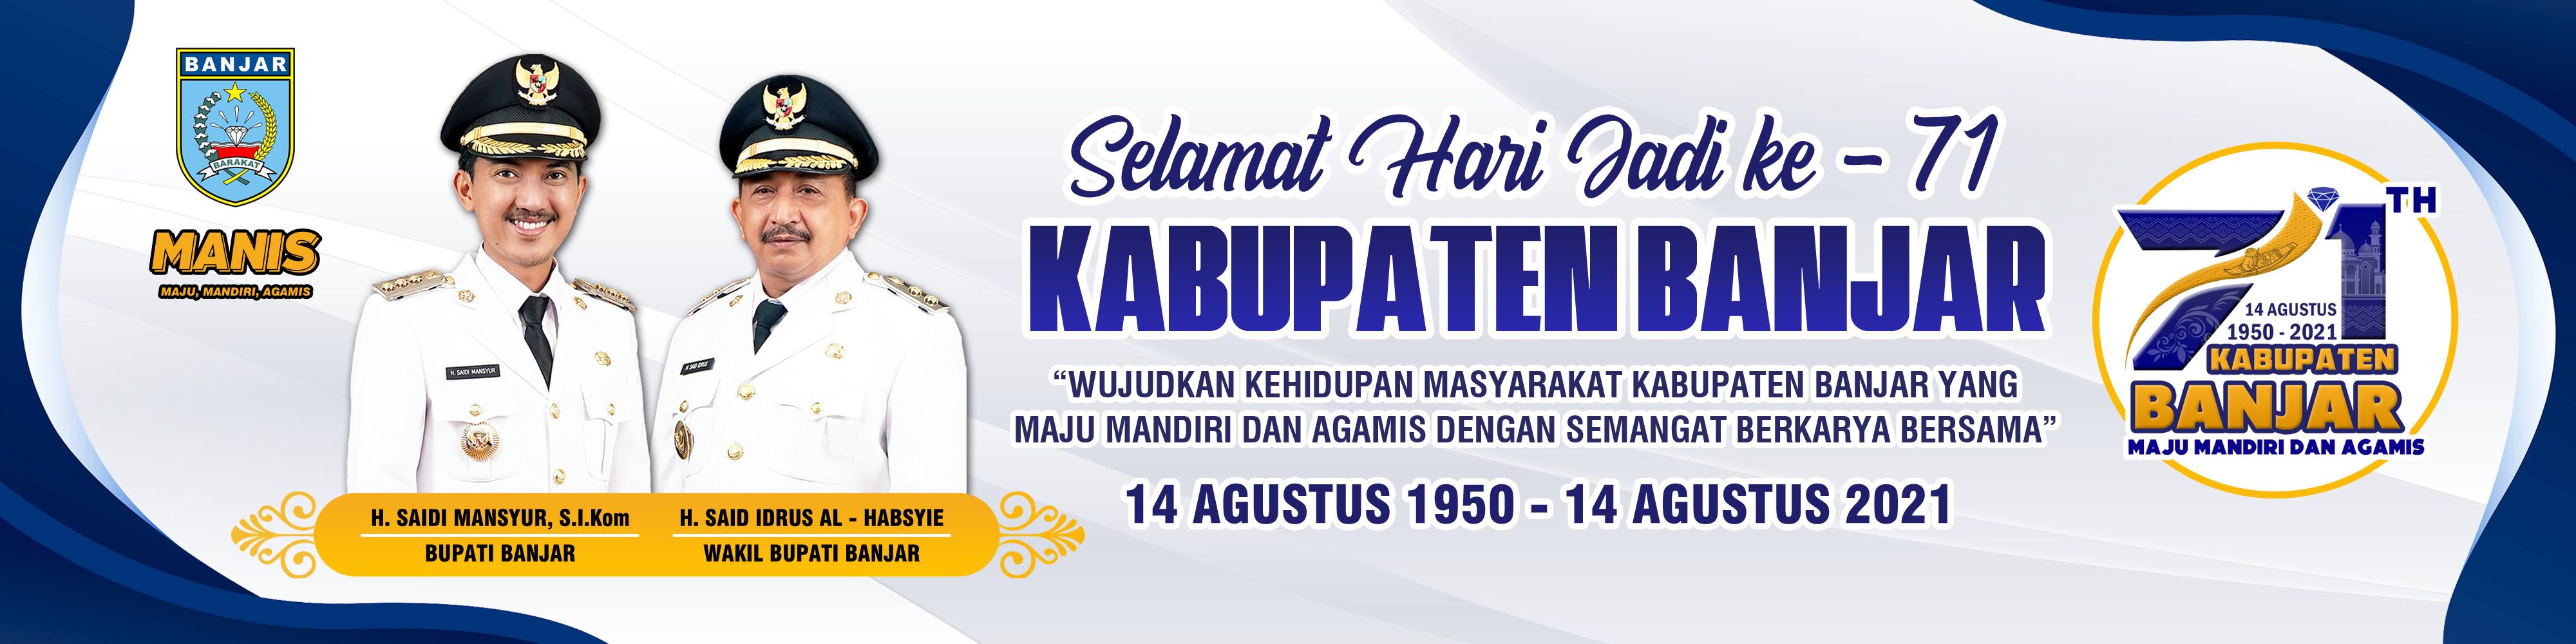 Spanduk Hari Jadi Kabupaten Banjar Ke-71 Kalimantan Selatan